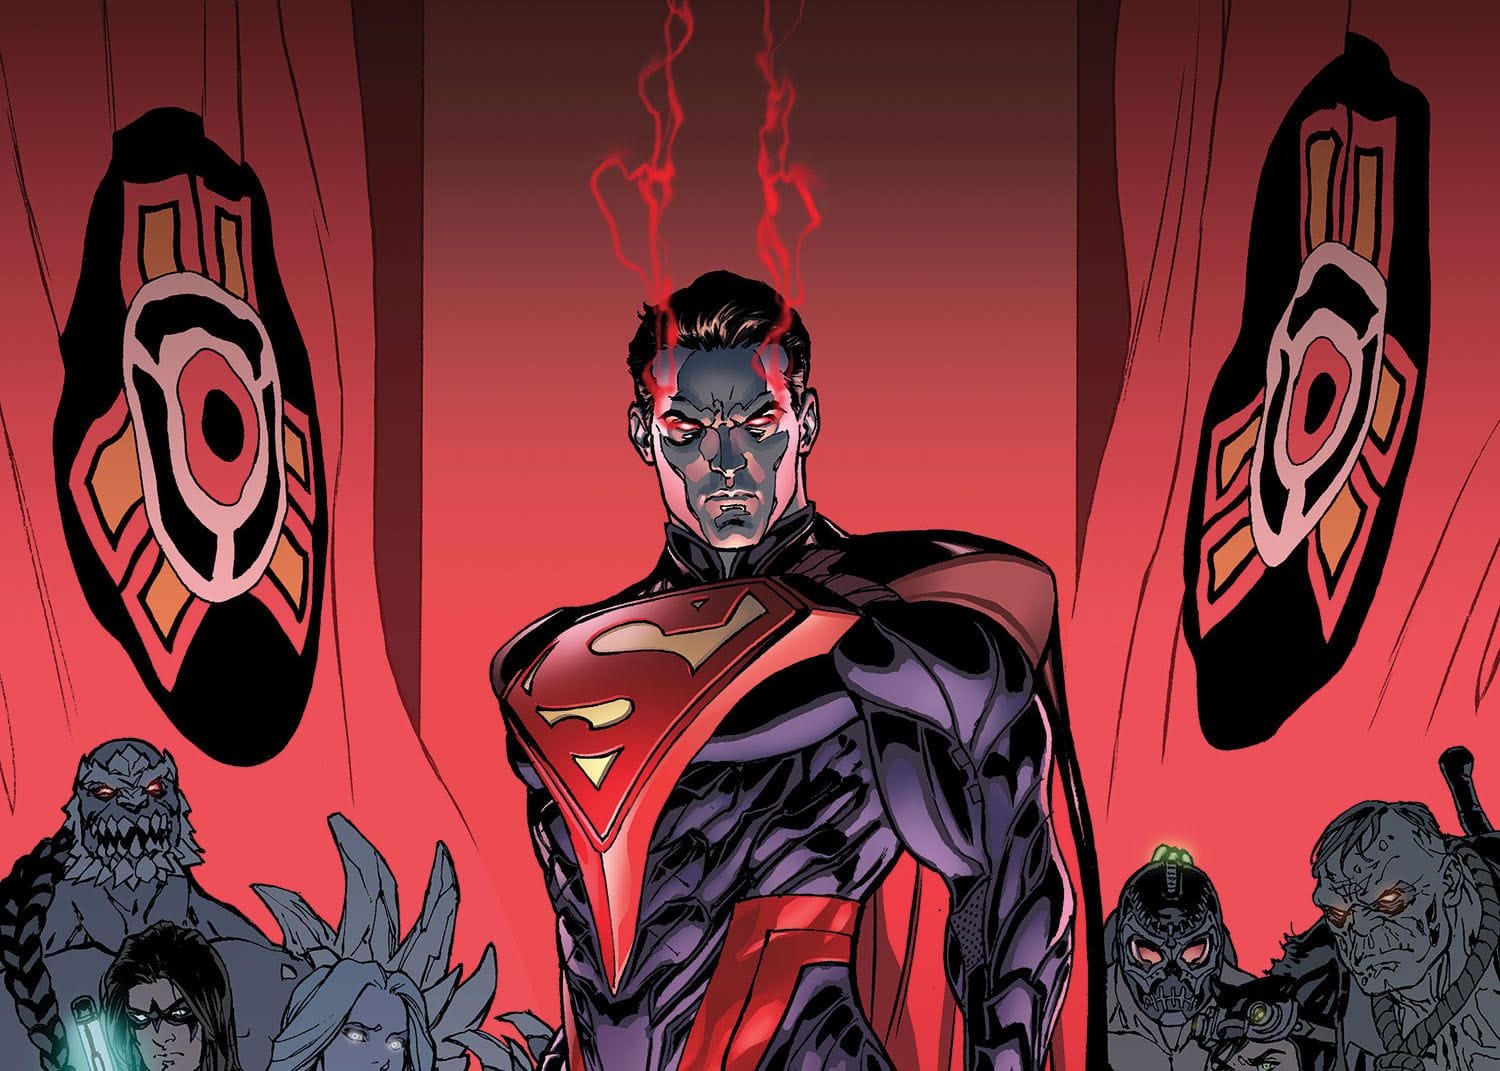 DC выпустили анимационную версию супергеройского файтинга Injustice и разозлили фанатов